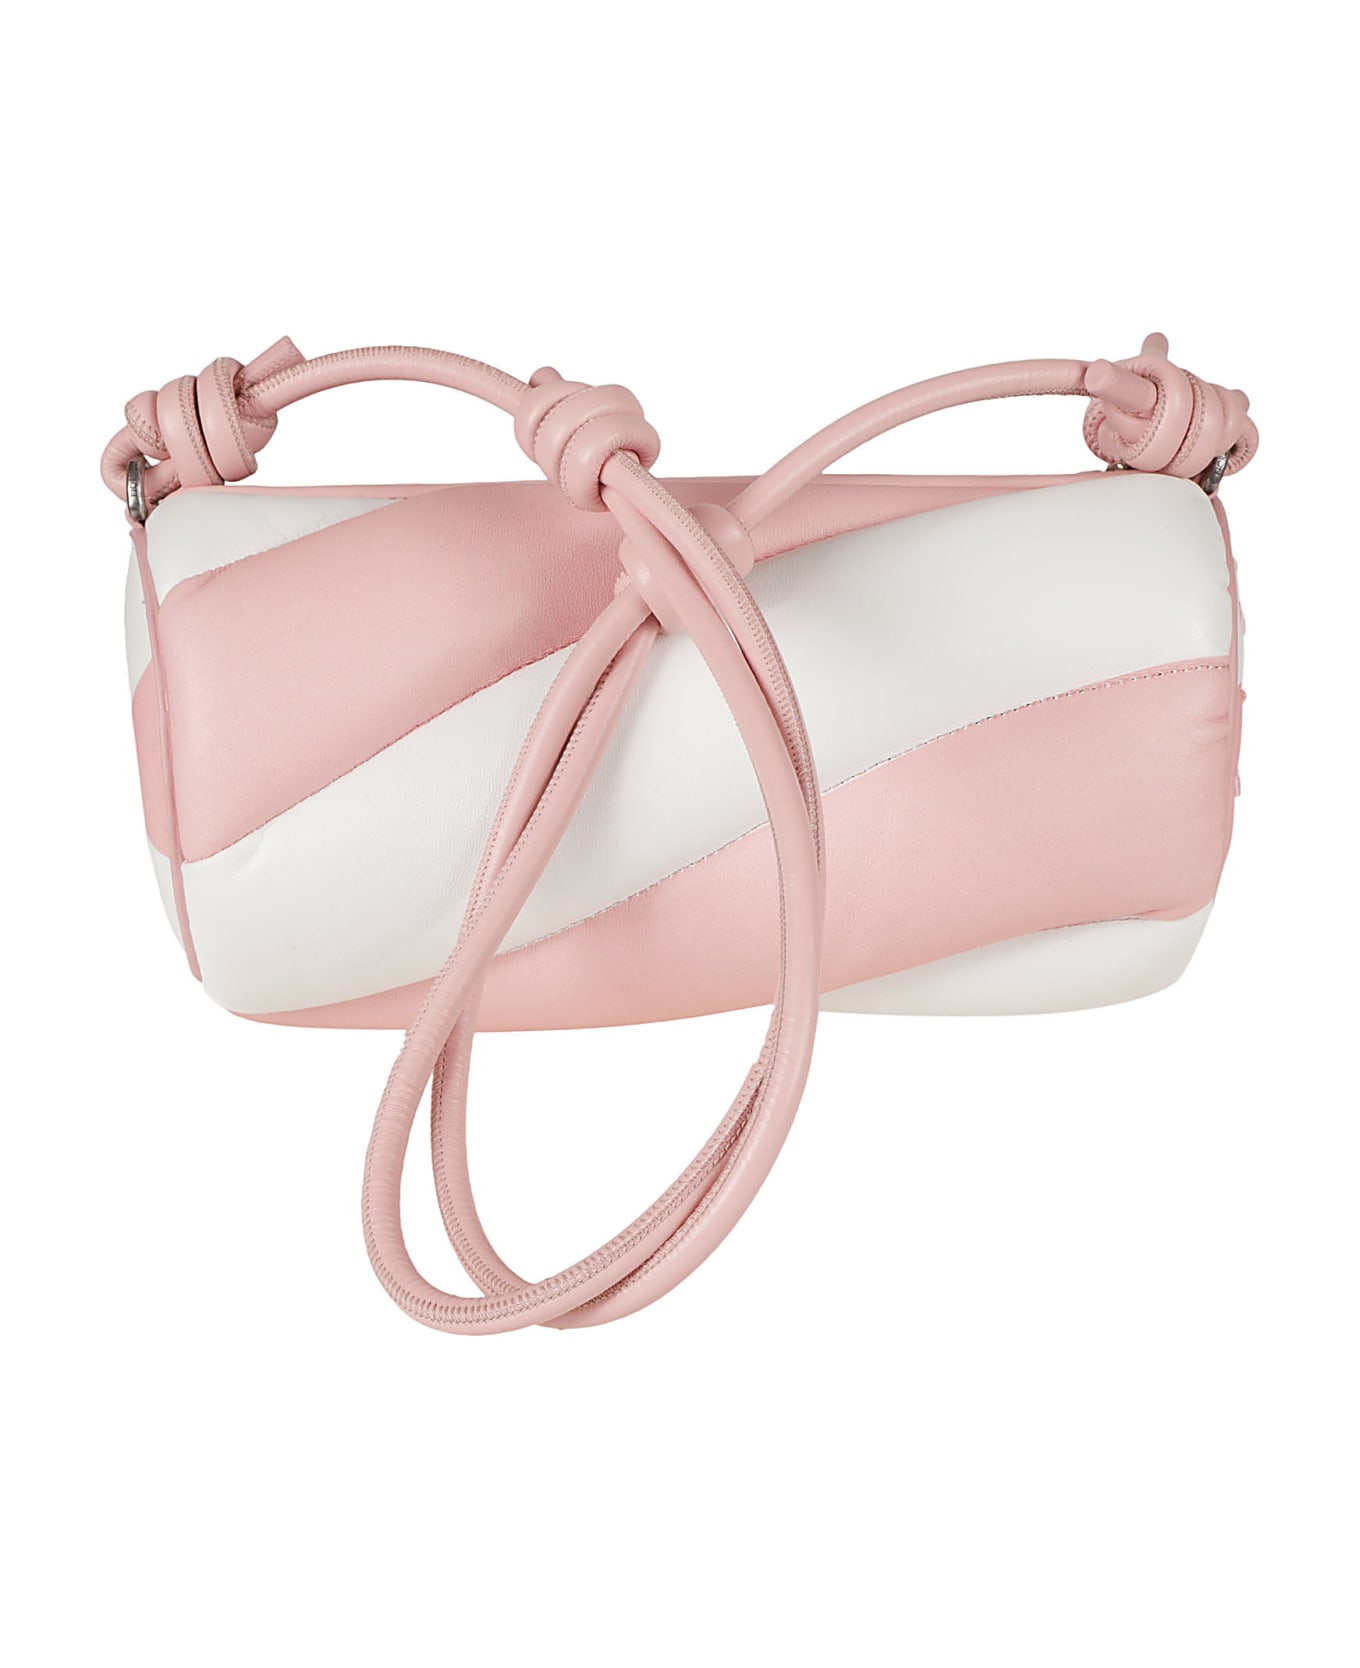 Fiorucci Mella Shoulder Bag - Pink